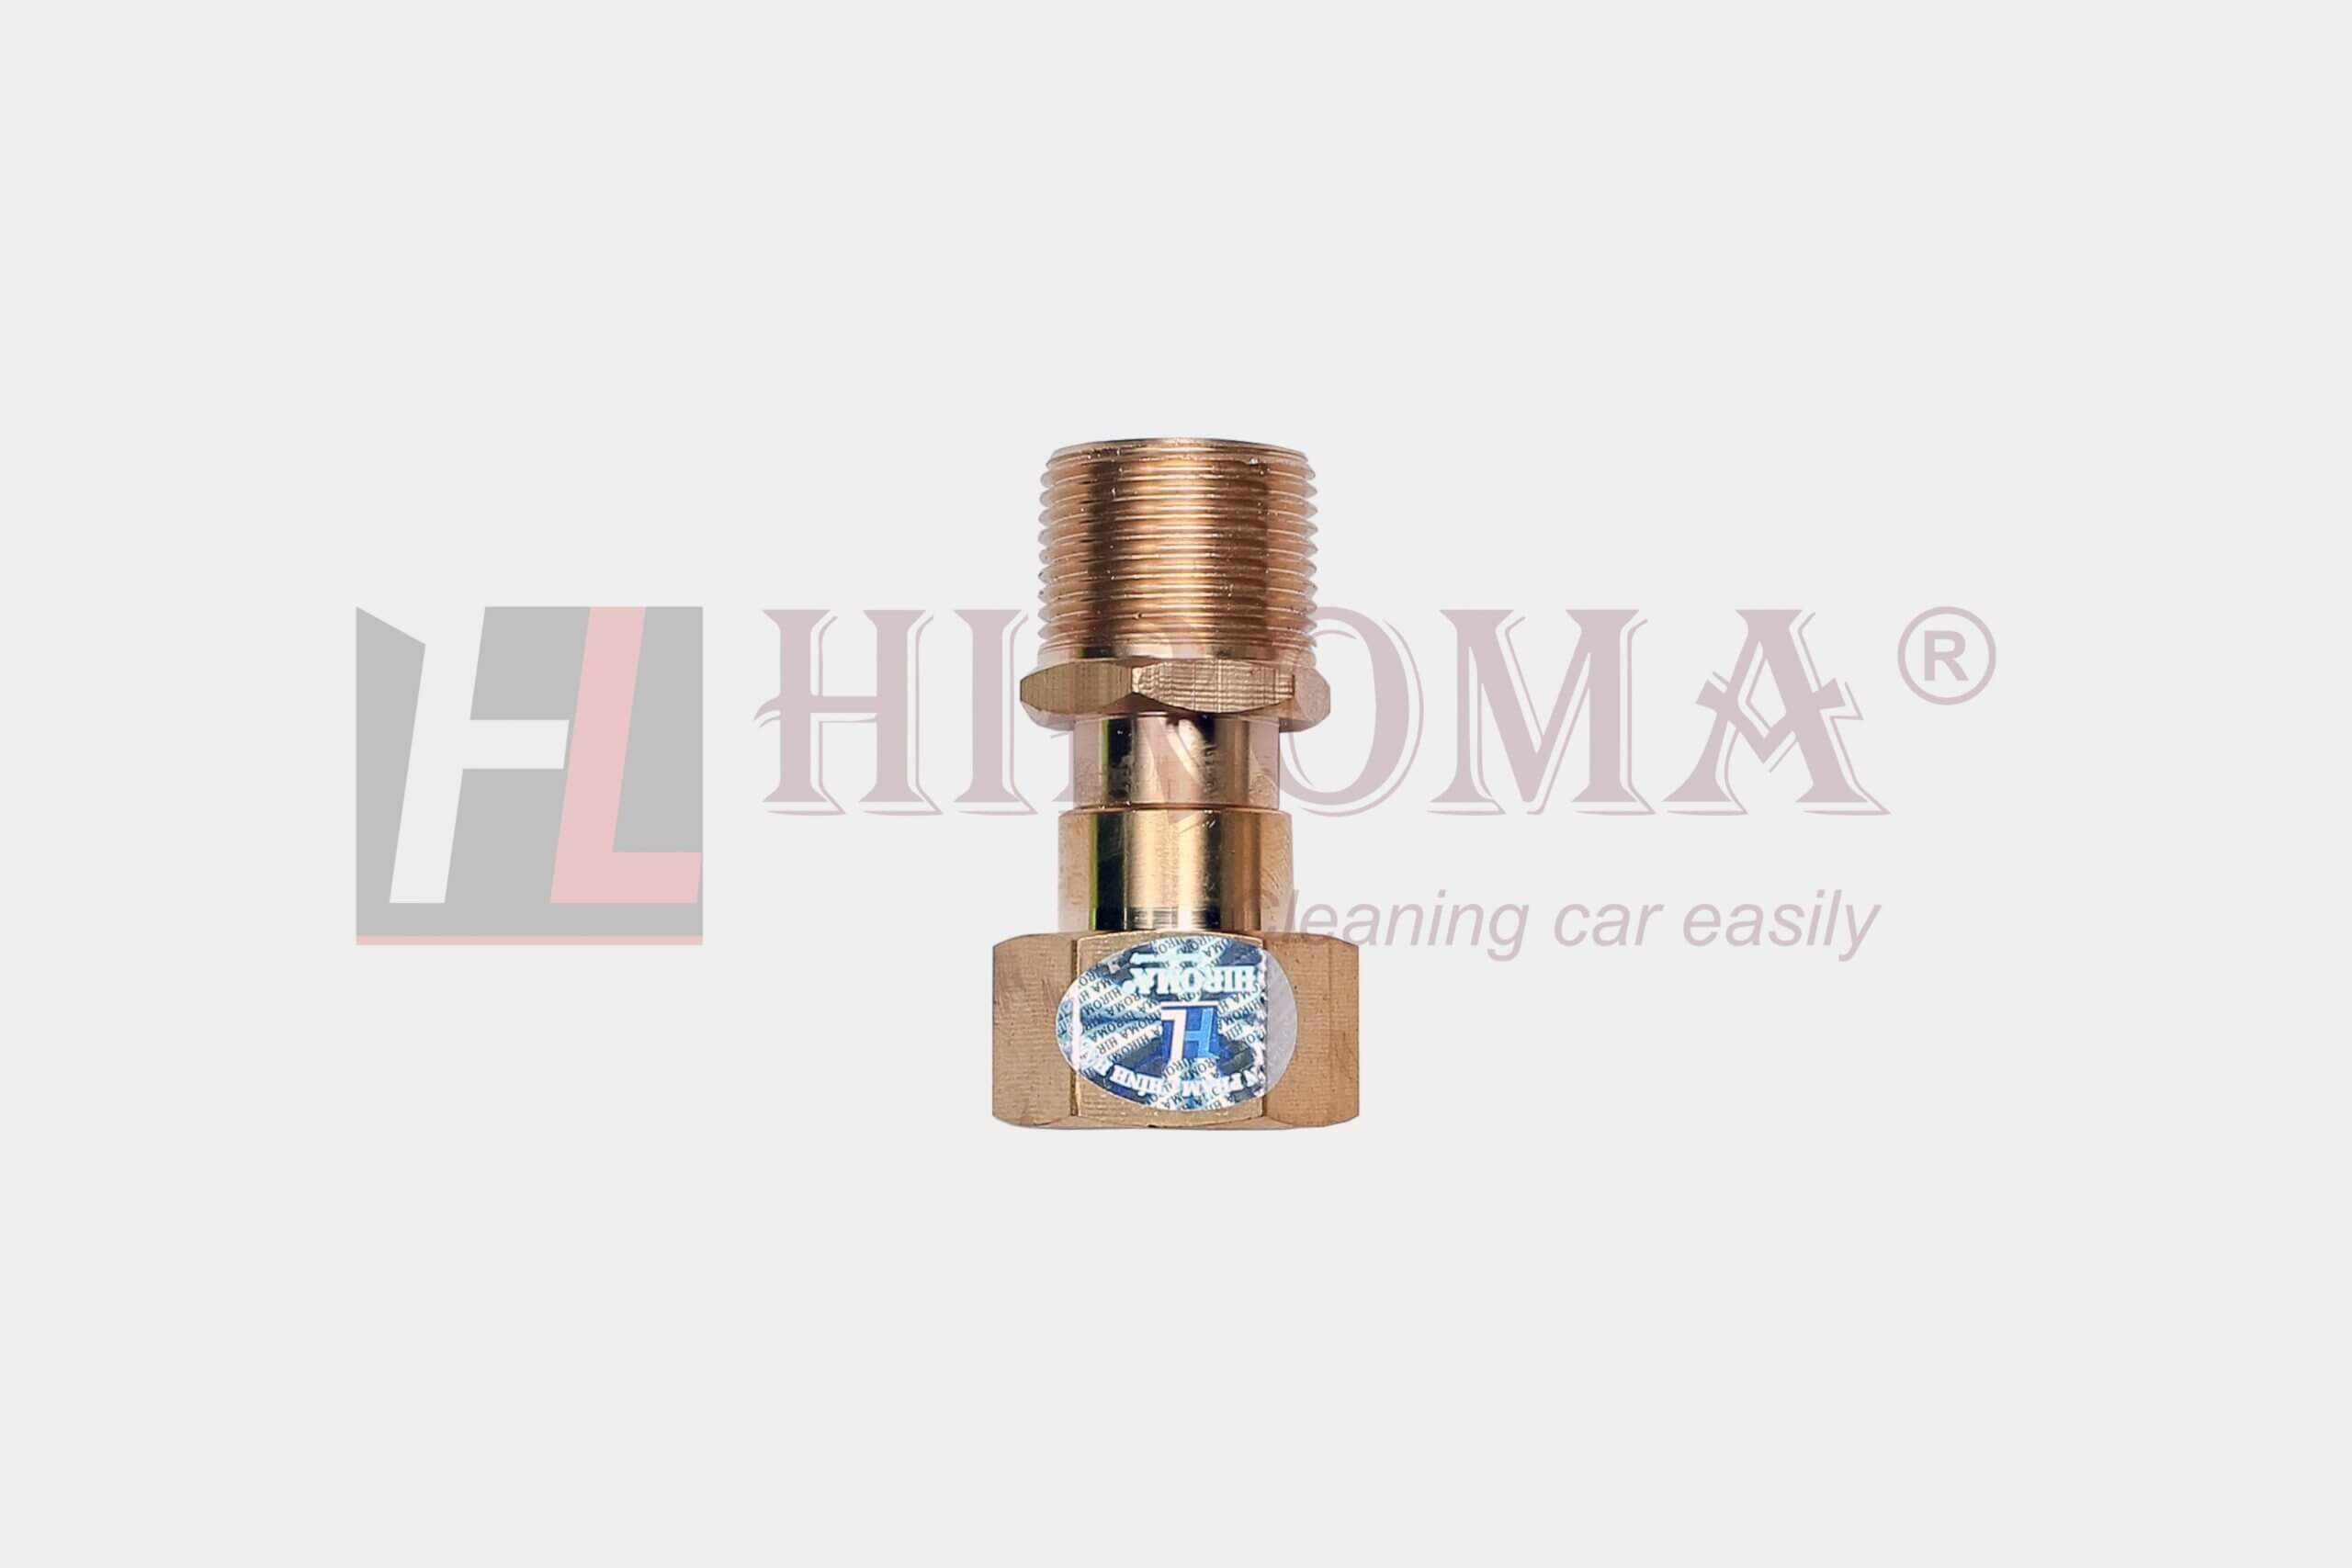 Chống xoắn dây áp lực HIROMA CHỈ DÙNG CHO MÁY HIROMA DHL – 1337